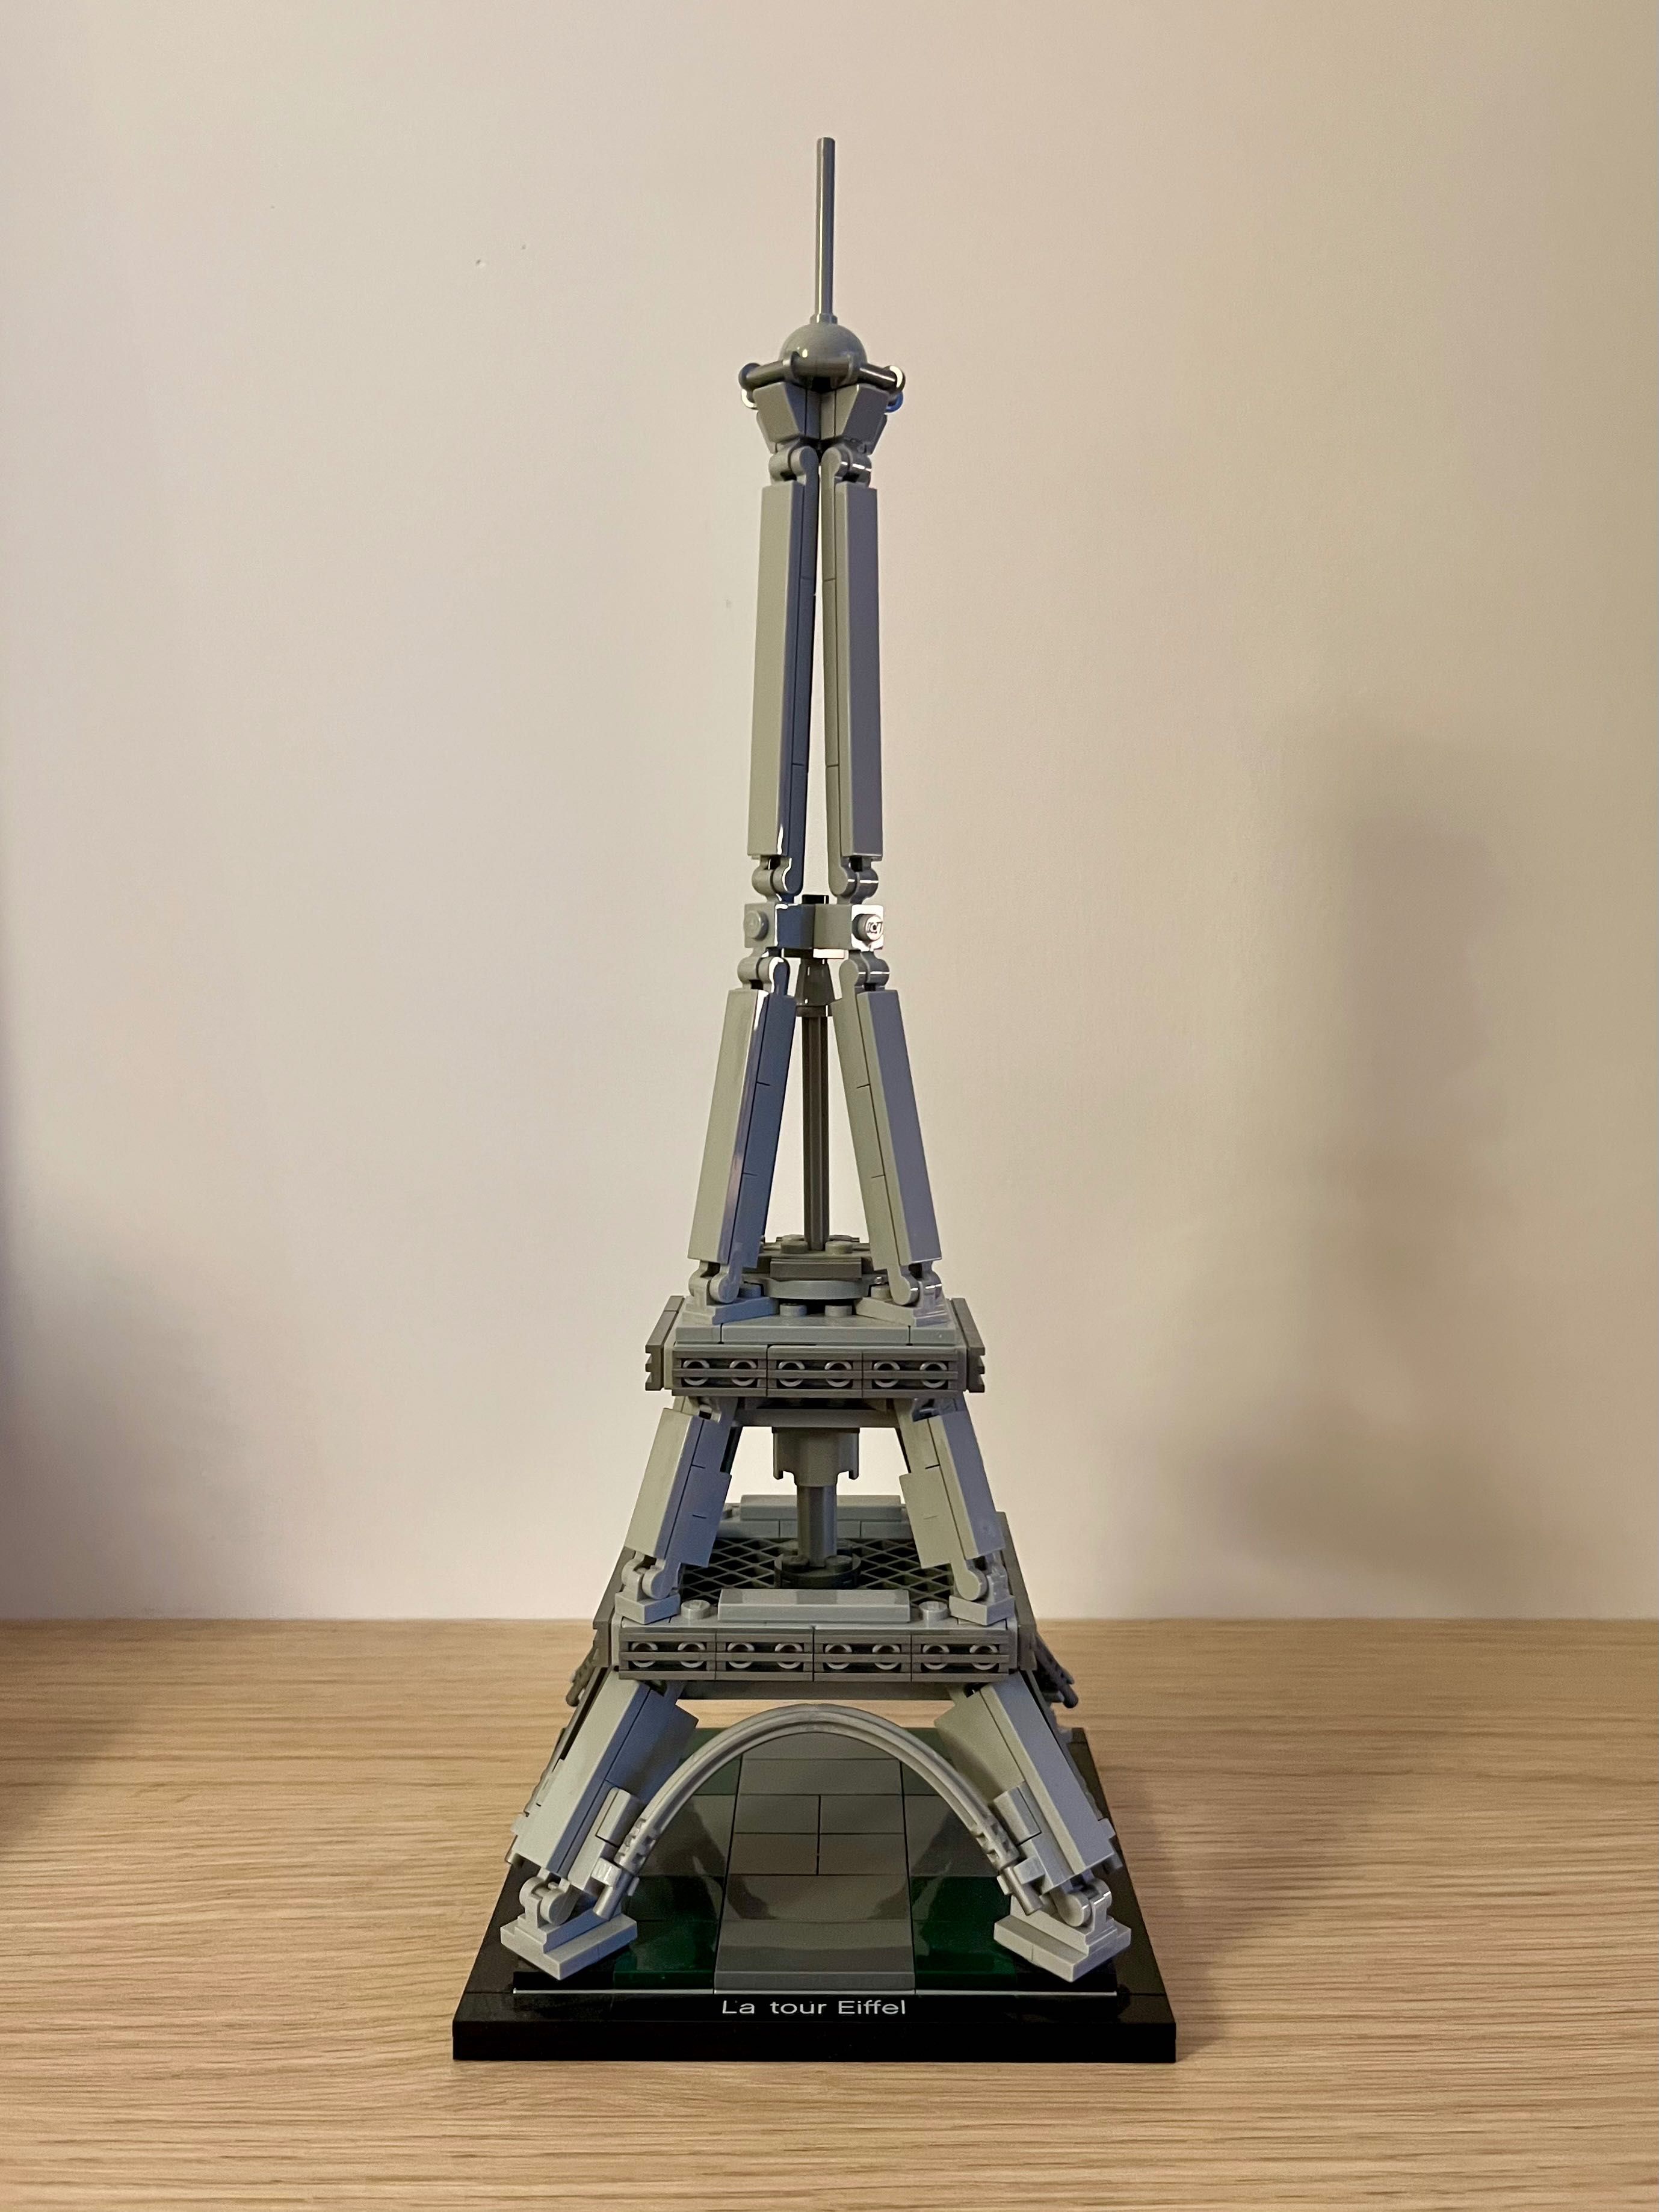 Lego Architecture 21019 Wieża Eiffla